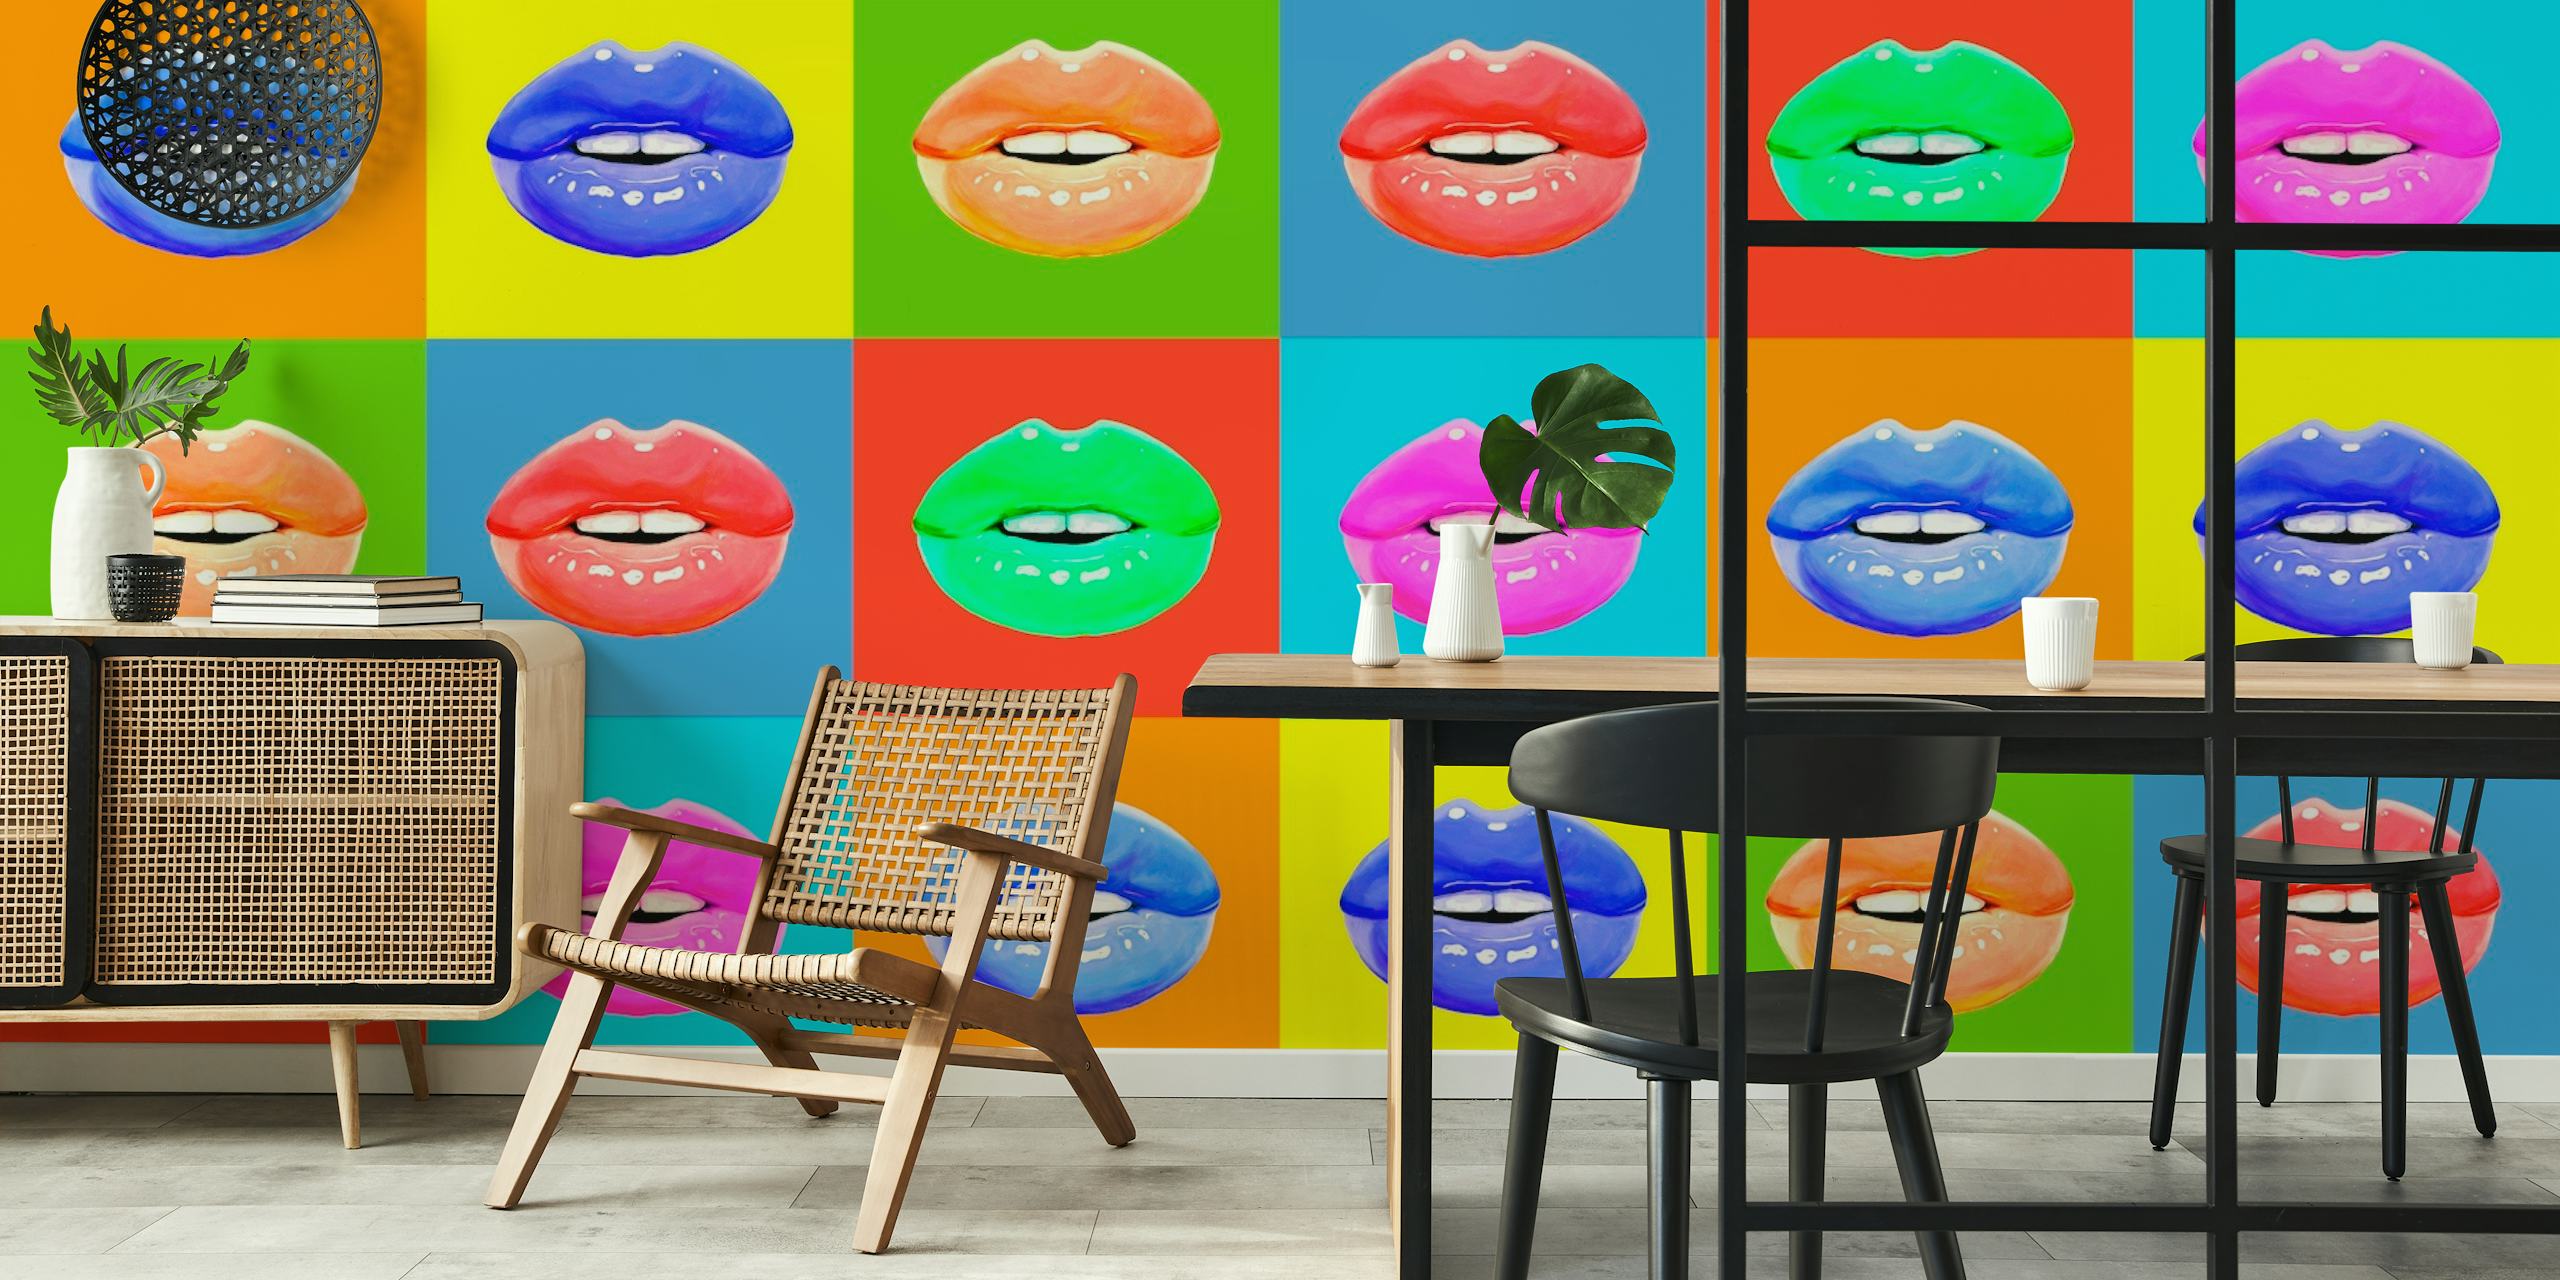 Gekleurde lippen fotobehang met rijen veelkleurige lippen op gevarieerde effen achtergronden